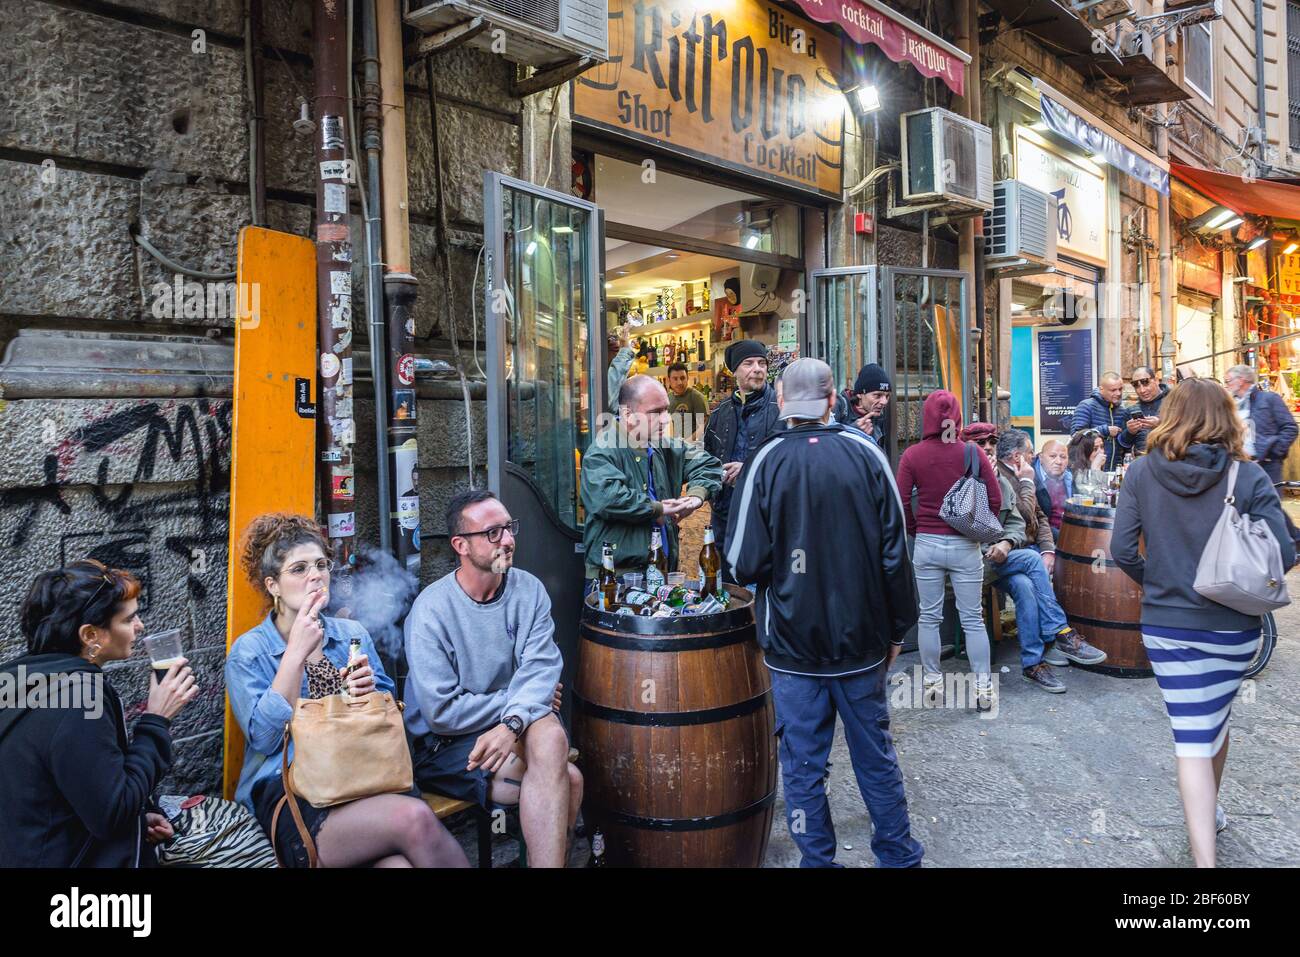 Les gens devant le bar du marché de rue en plein air la Vucciria sur la rue Maccherronai dans la ville de Palerme du sud de l'Italie, capitale de l'île de Sicile Banque D'Images